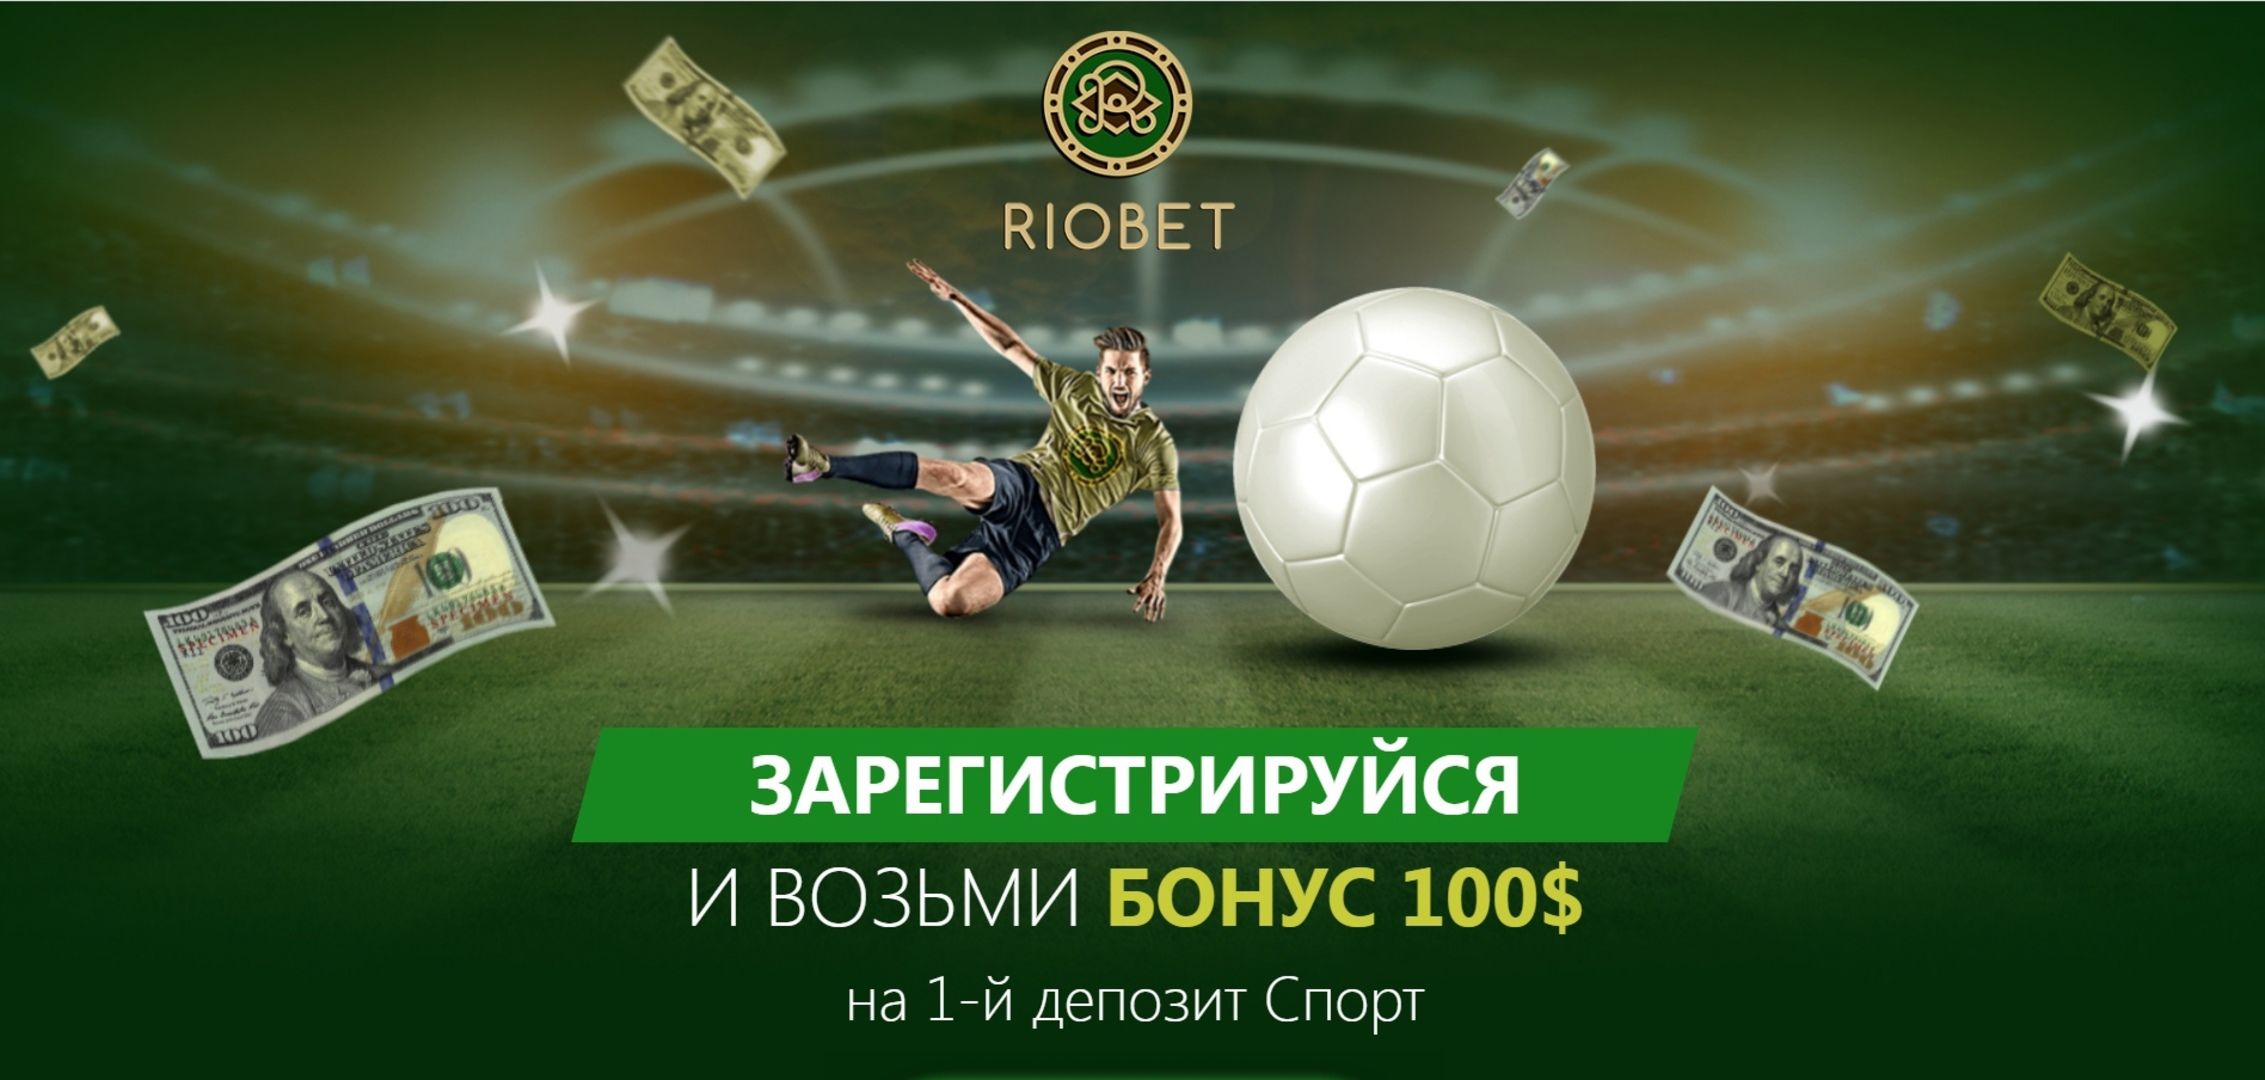 Riobet предлагает 100 долларов на первый депозит по спортивным ставкам